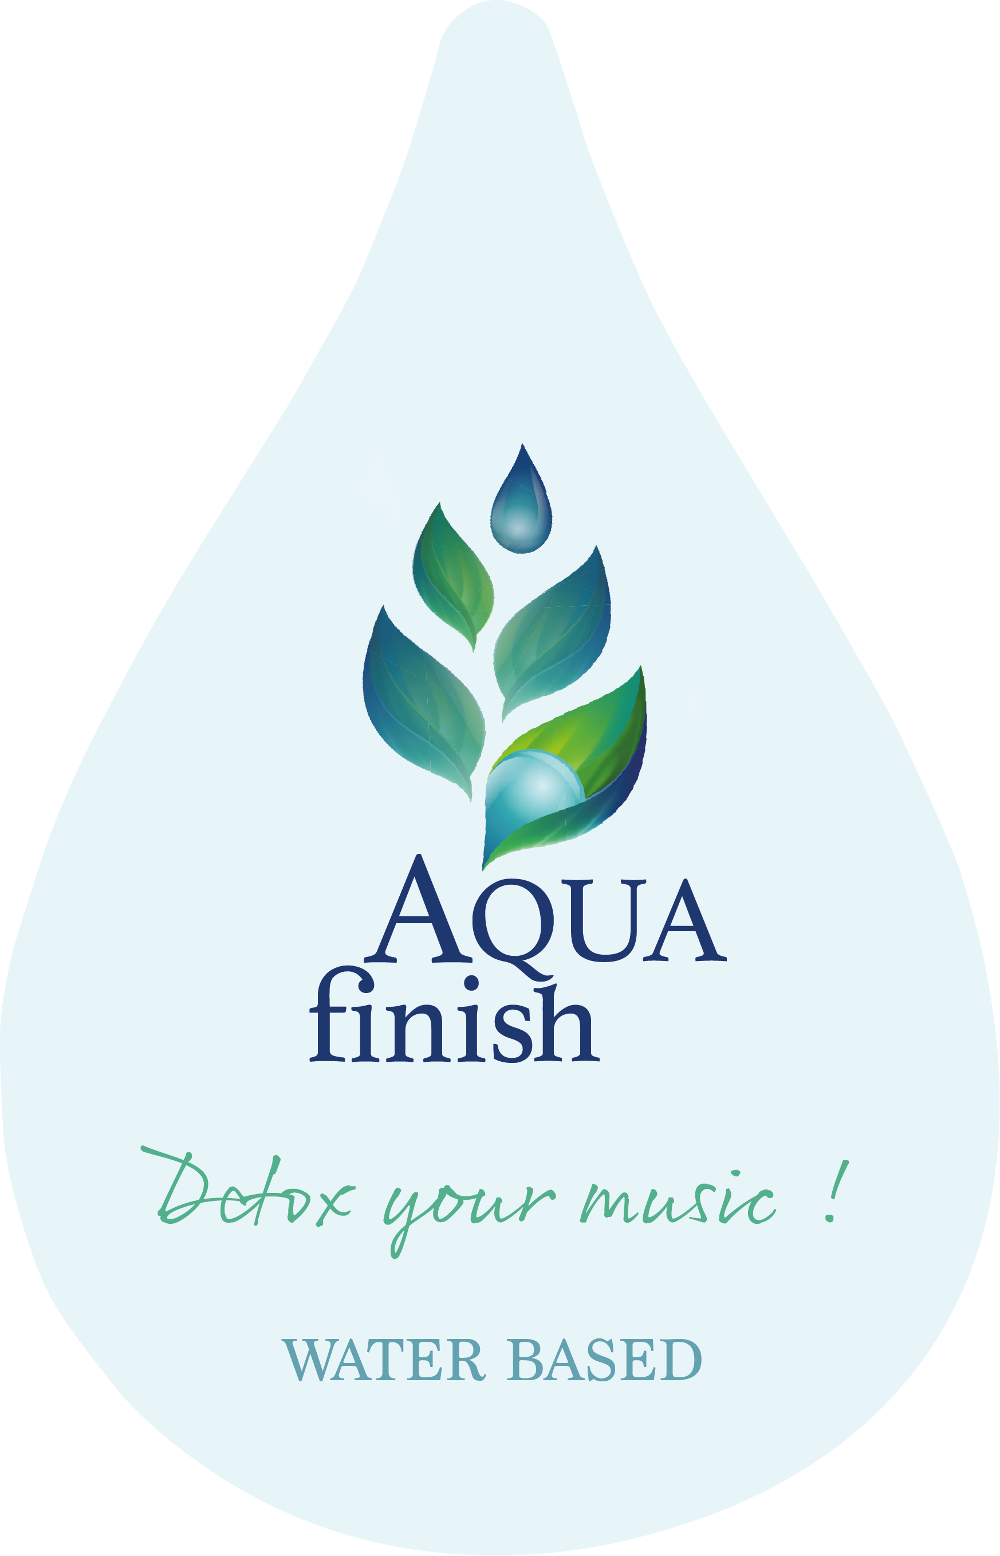 Aqua finish